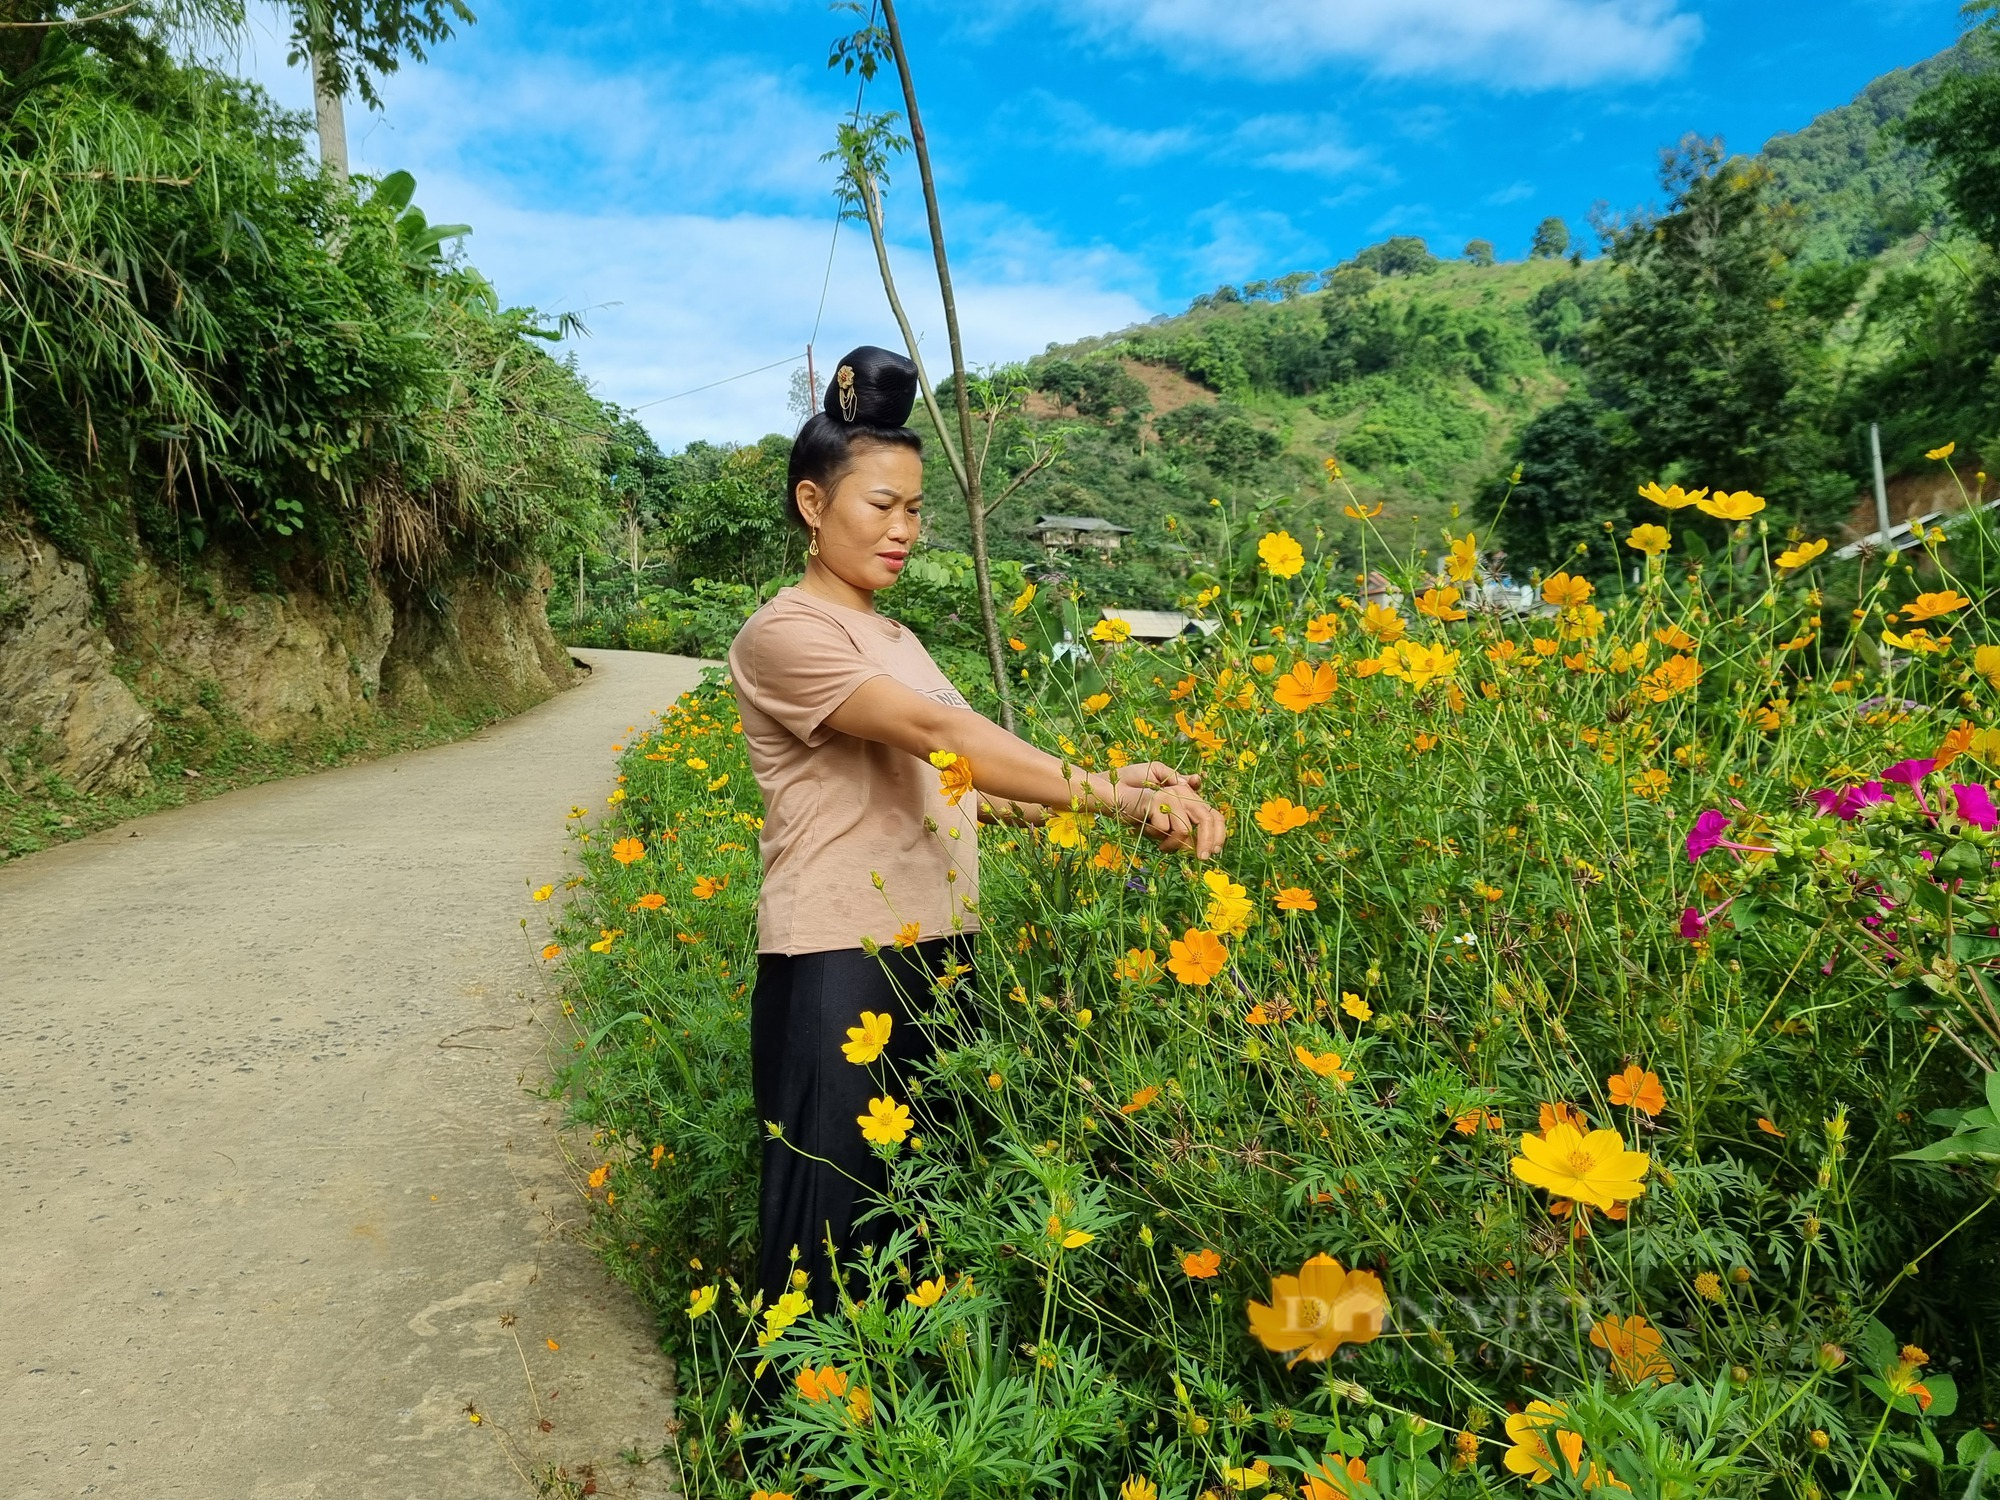 Mê mẩn con đường hoa nông thôn mới đẹp như tranh ở bản người Thái của tỉnh Sơn La - Ảnh 3.